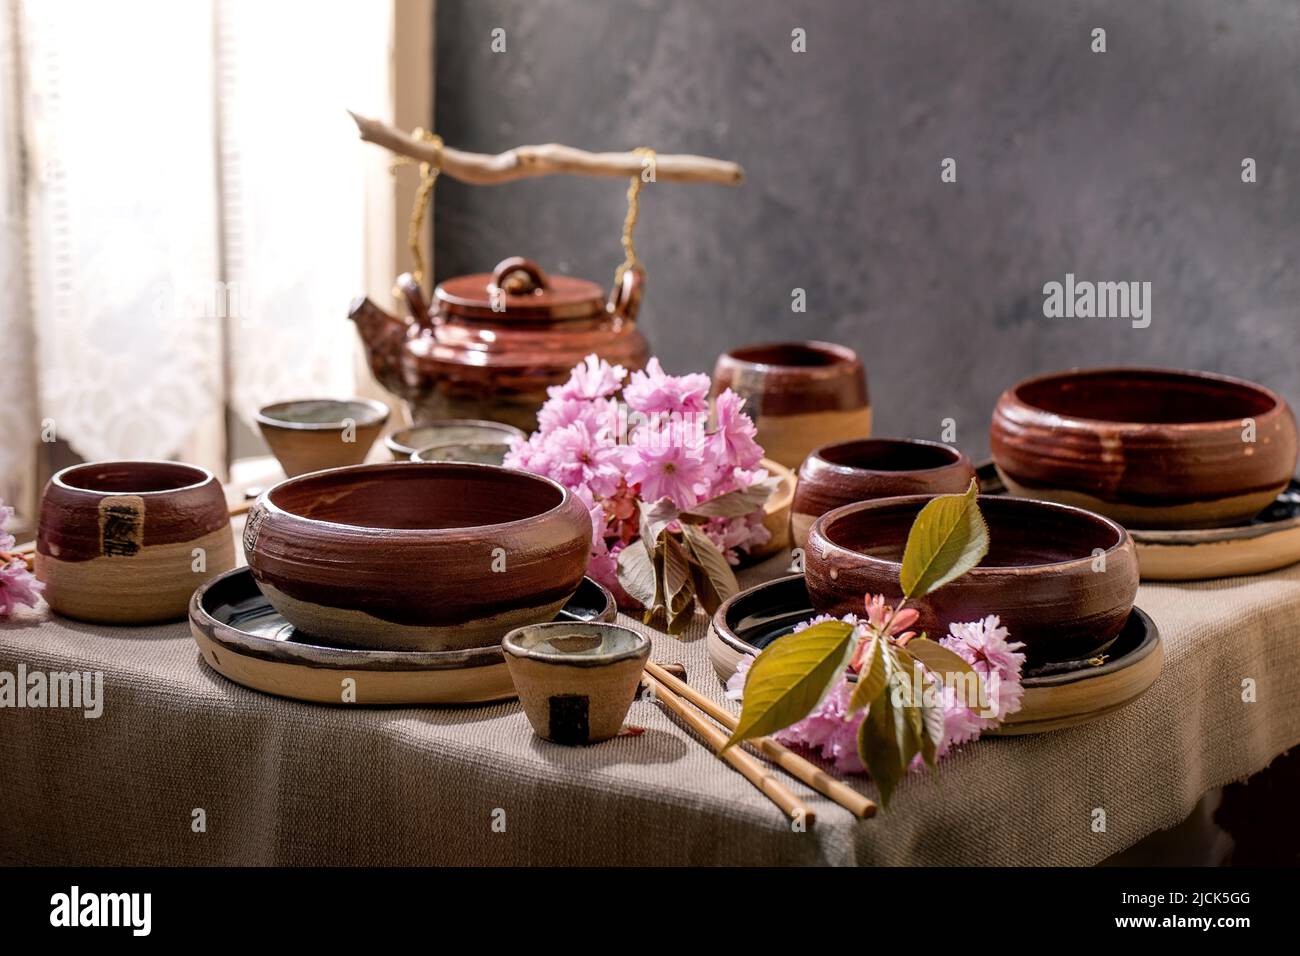 Table de style japonais asiatique avec vaisselle en céramique artisanale  vide, bols bruns rugueux, bouilloire et tasses sur la nappe en lin, décorée  de sprin rose Photo Stock - Alamy